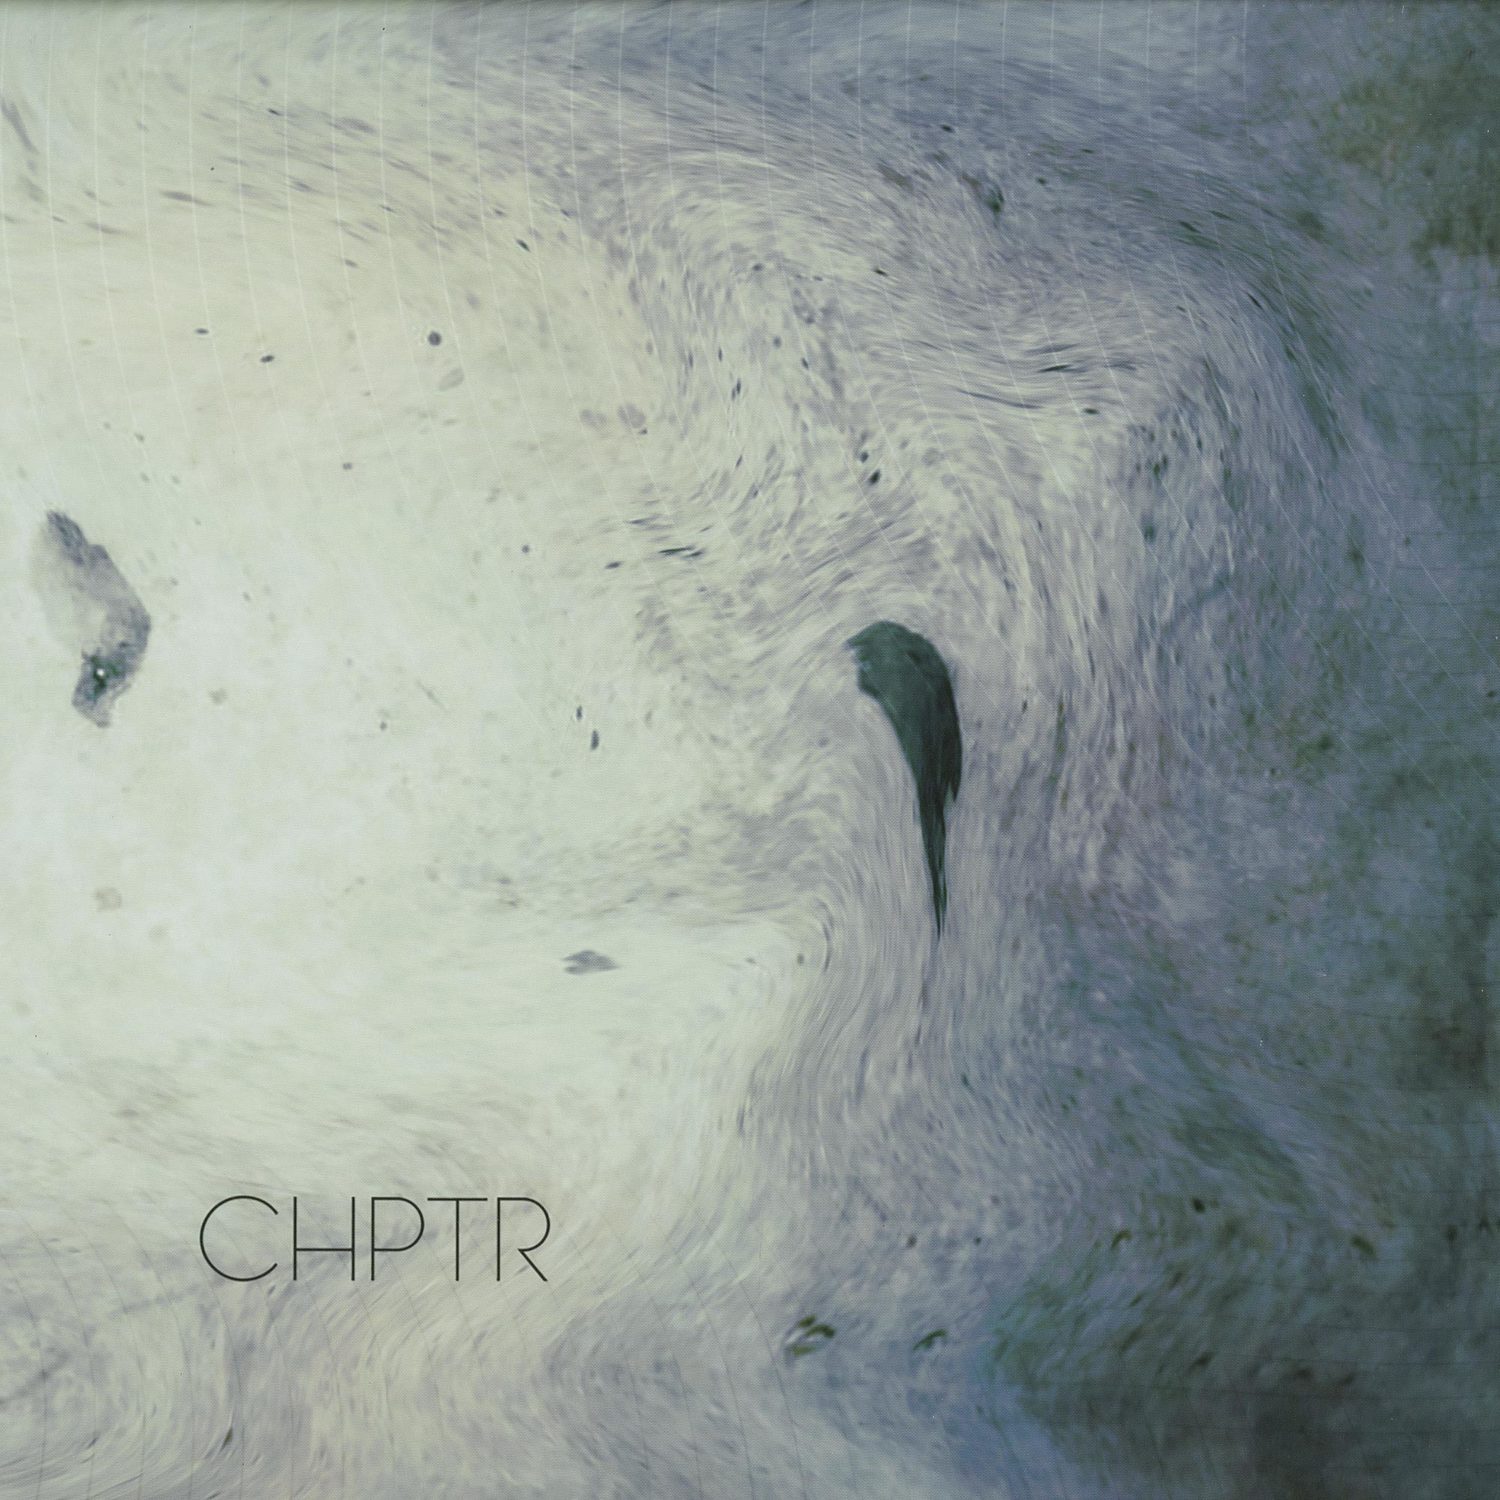 CHPTR - CHPTR 001